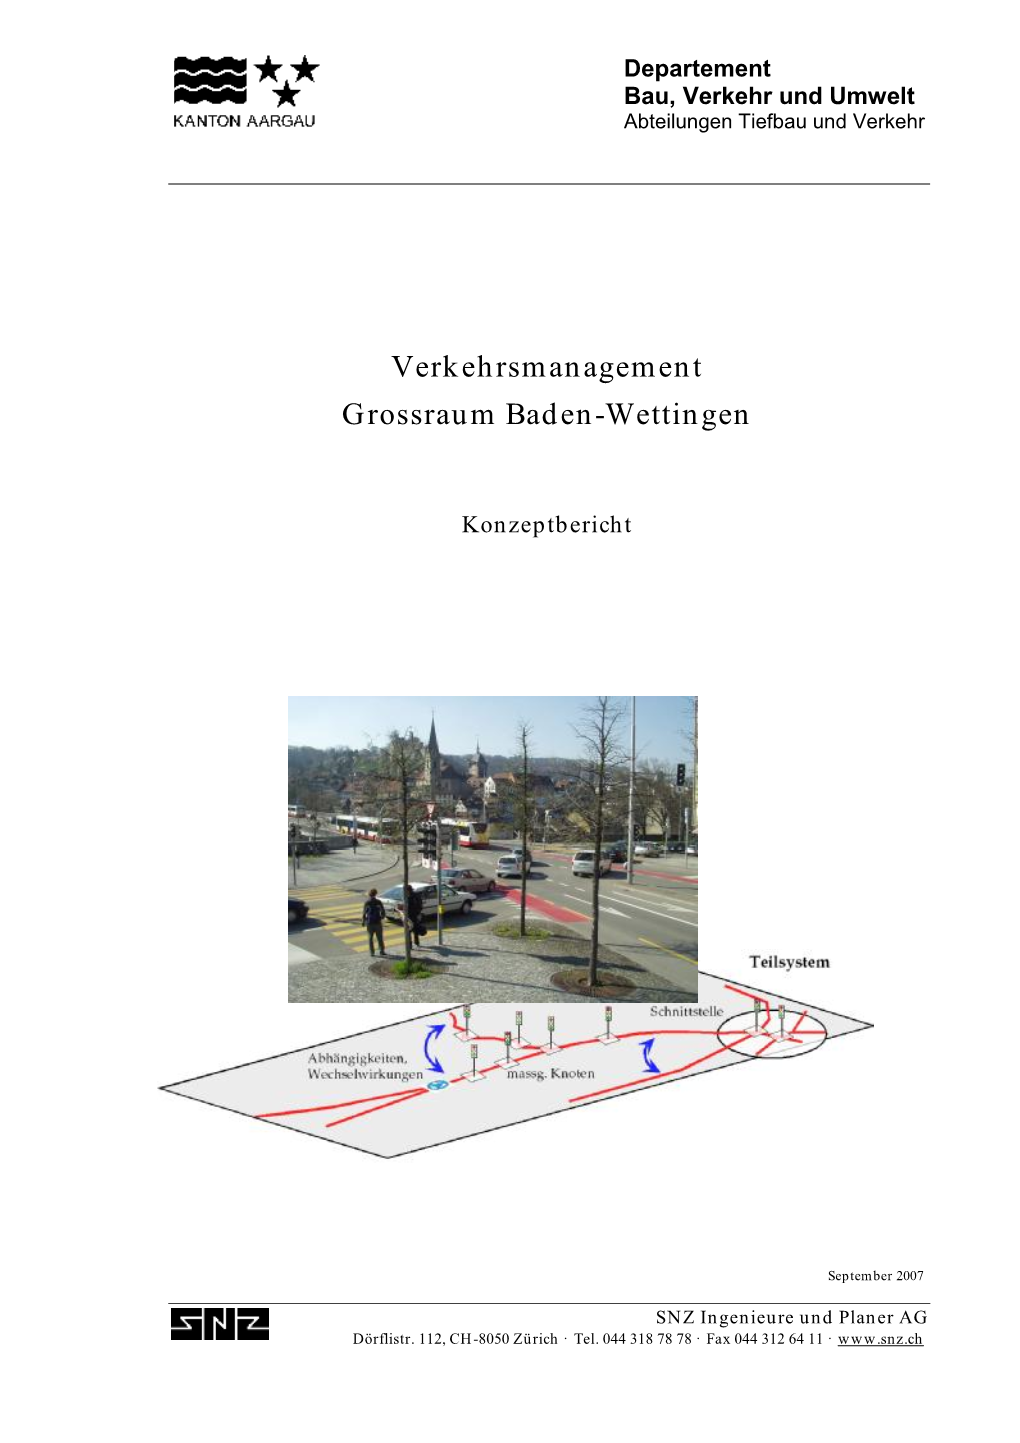 Verkehrsmanagement Grossraum Baden-Wettingen